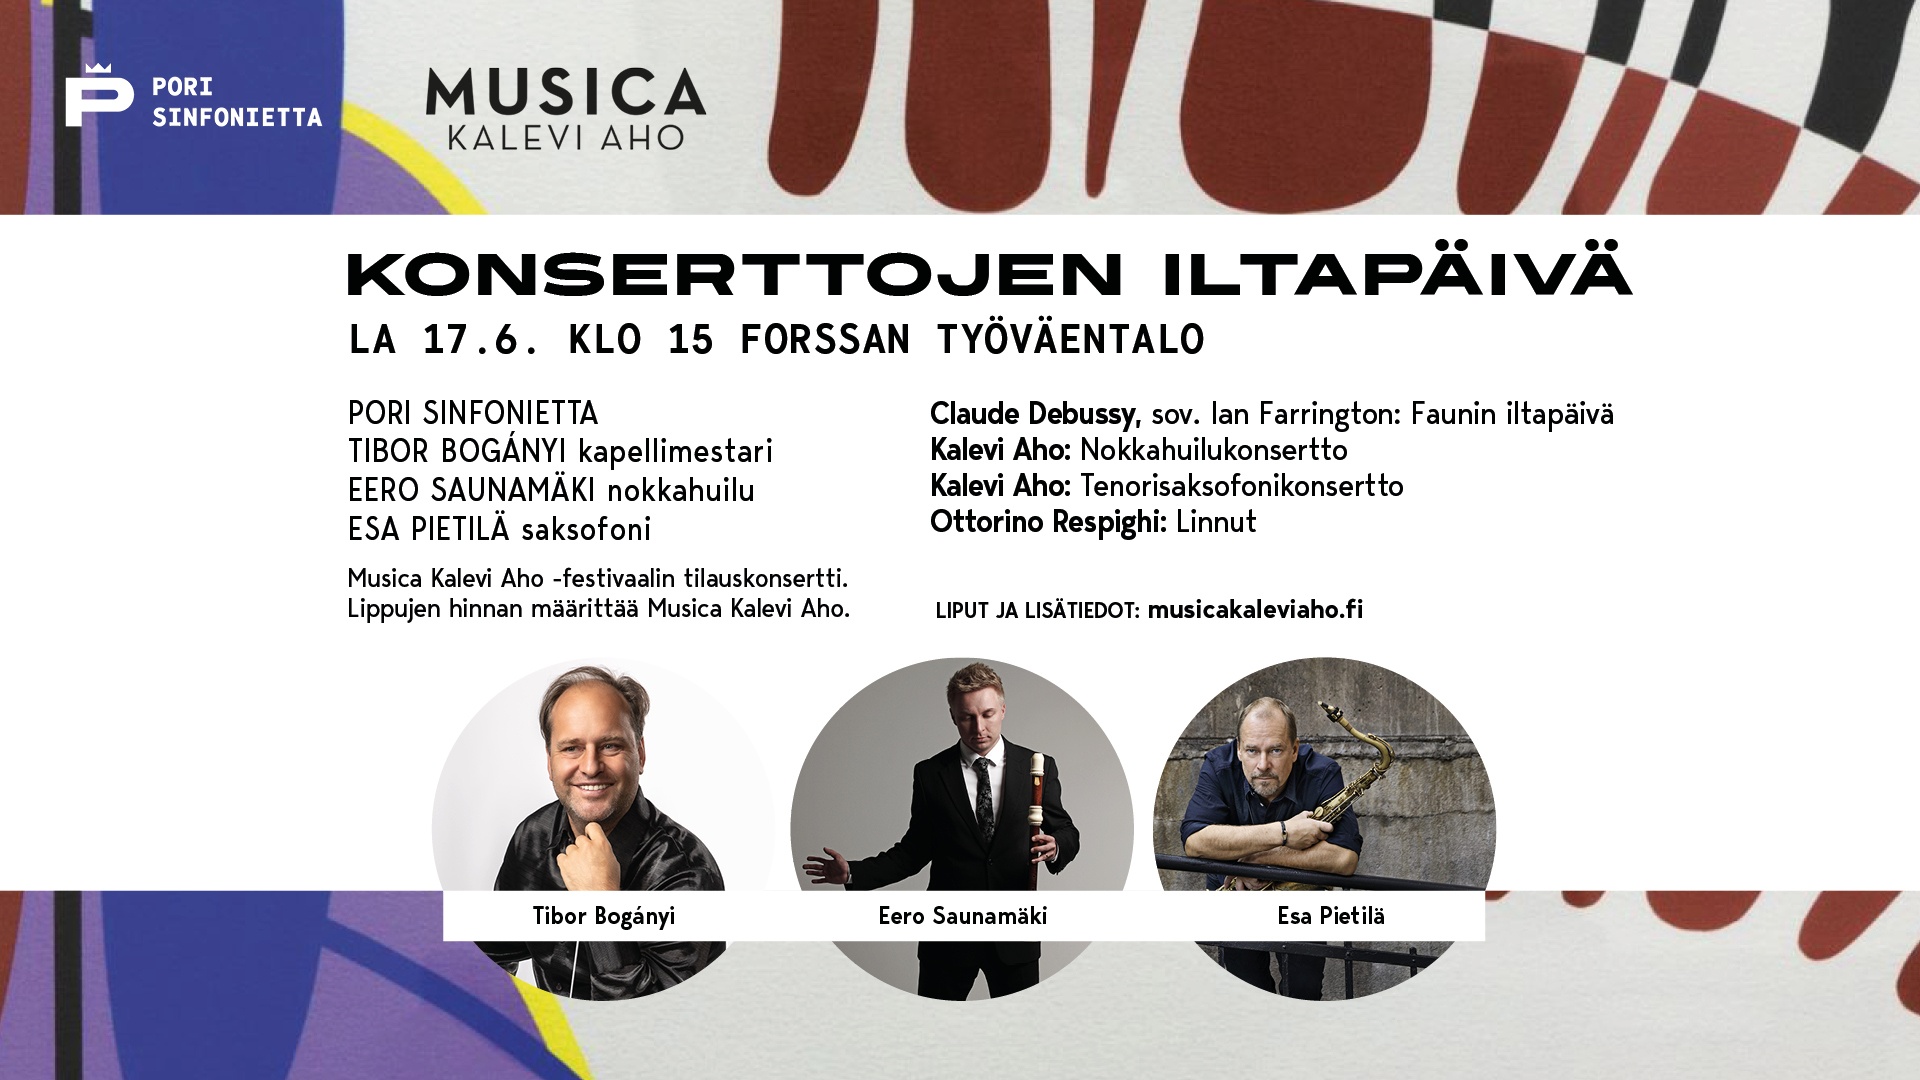 Musica Kalevi Aho: Konserttojen iltapäivä